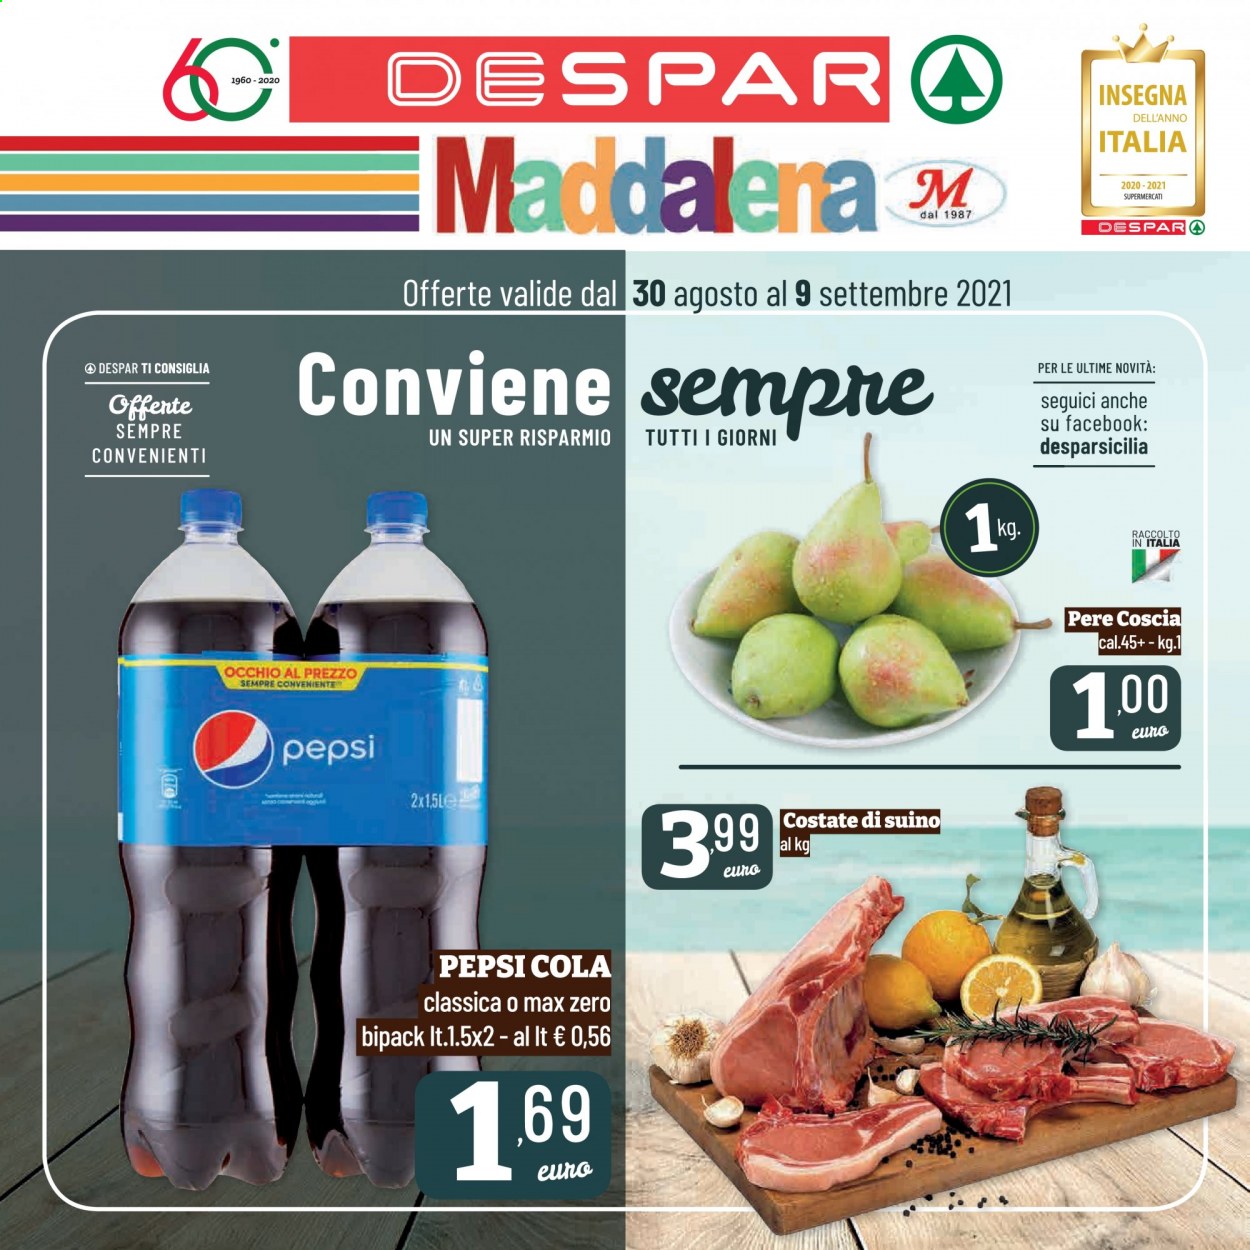 thumbnail - Volantino Despar - 30/8/2021 - 9/9/2021 - Prodotti in offerta - pere, costata di suino, suino, Pepsi, bibita gassata. Pagina 1.